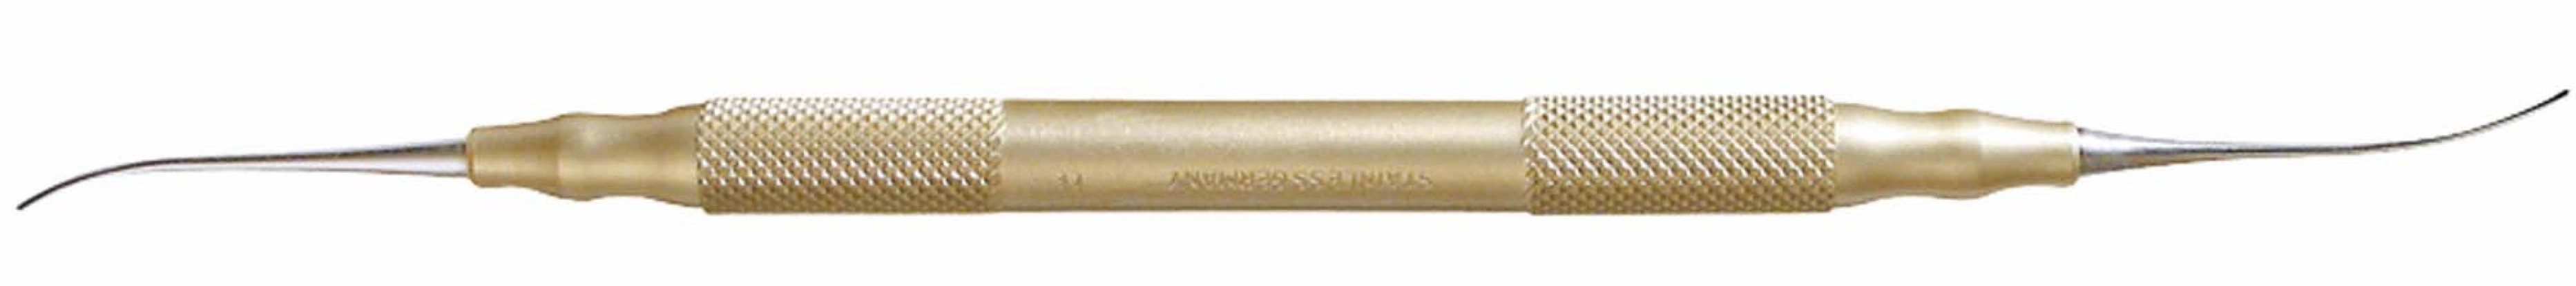 Моделировочный инструмент для работы с воском  золотой OMNIDENT ( Германия)  арт15796